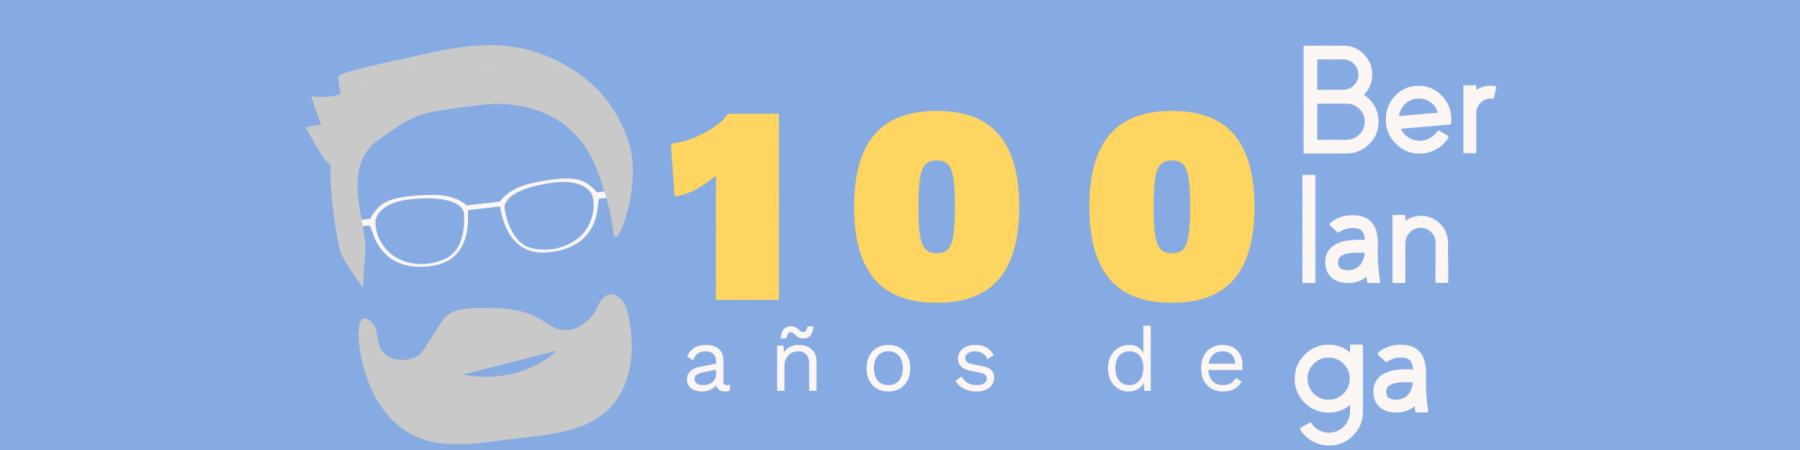 100 años de Berlanga